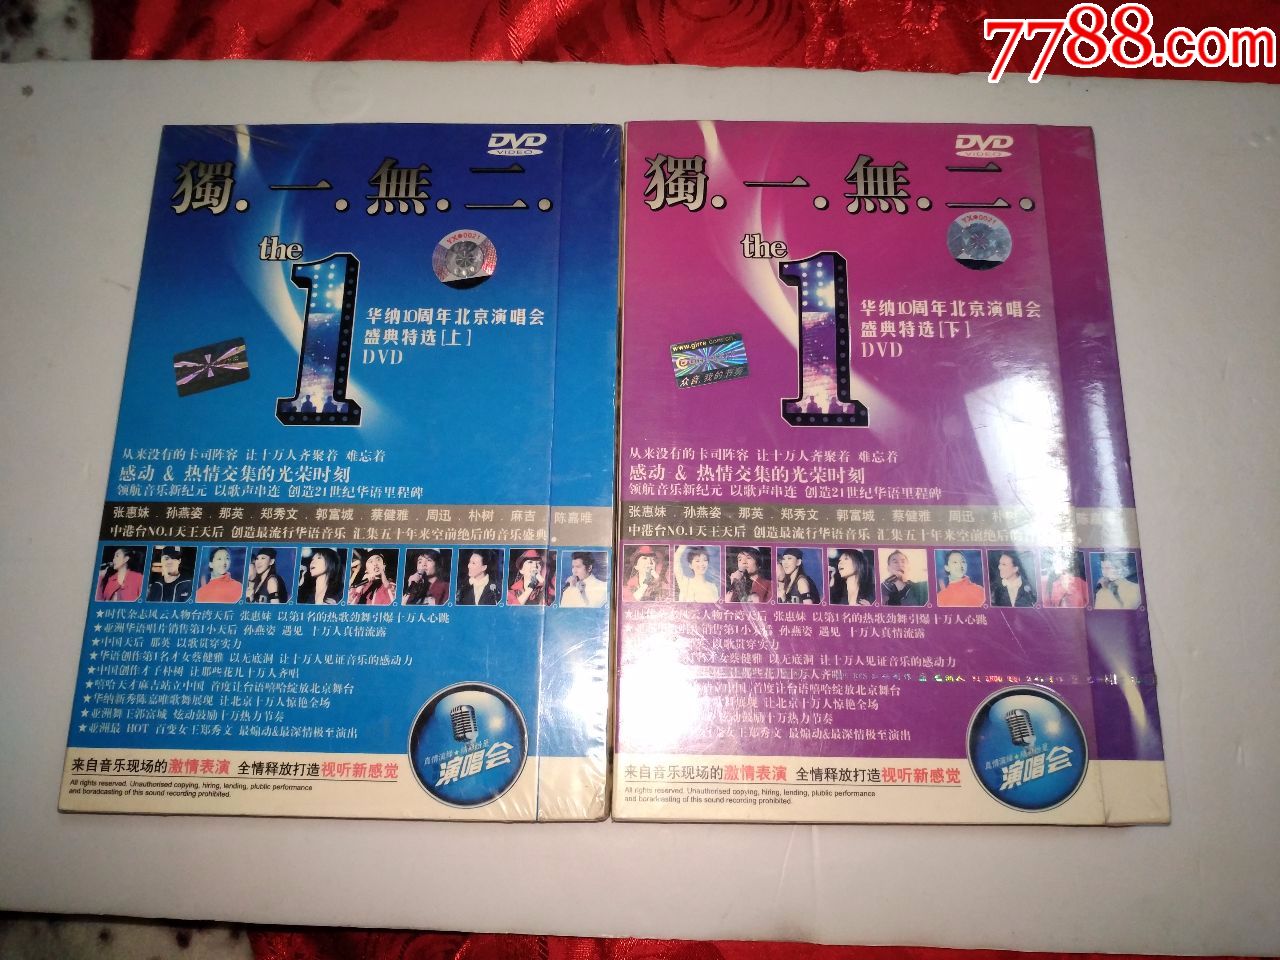 十周年北京演唱会,请注意这张是DVD,孙燕姿张